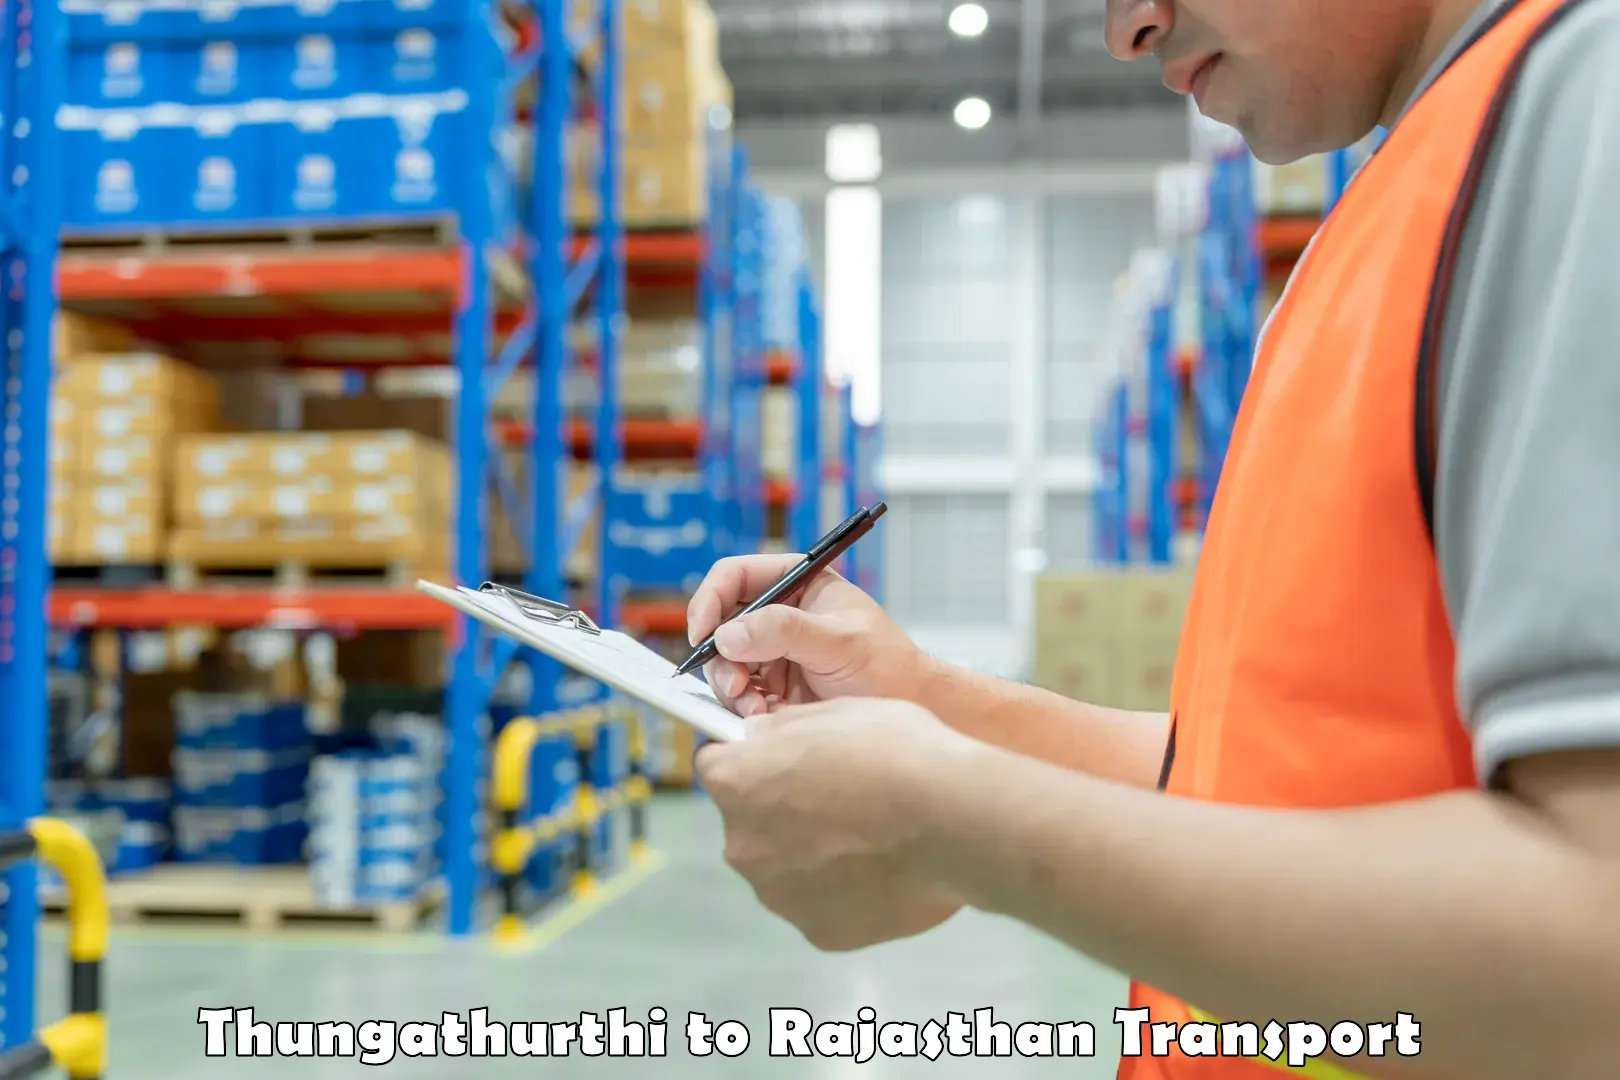 Furniture transport service Thungathurthi to Deshnok